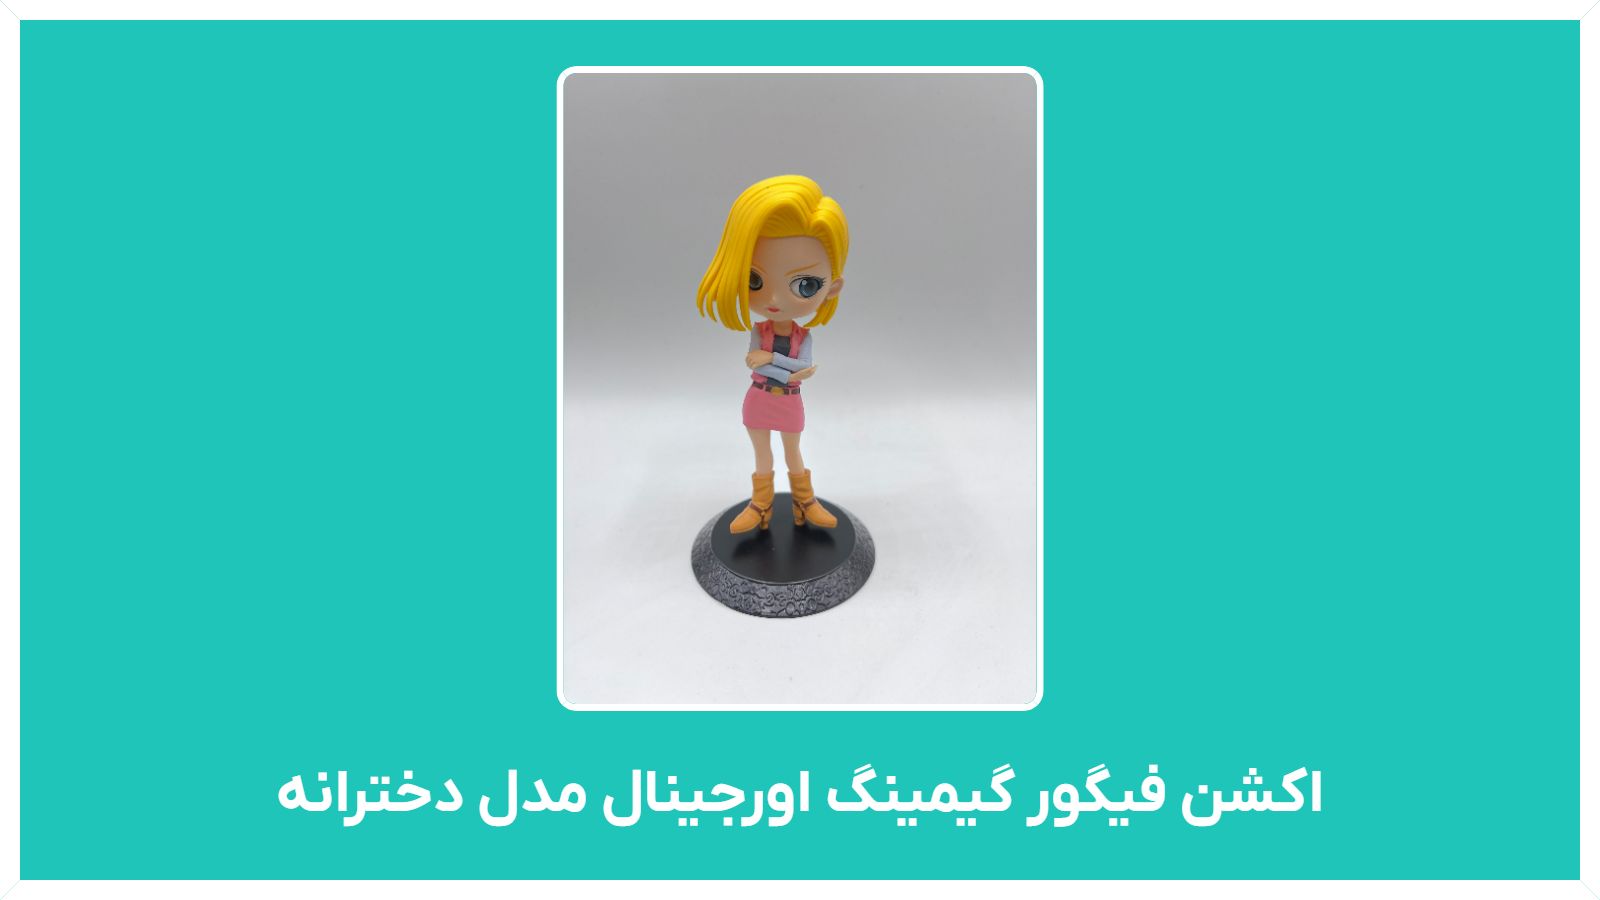 راهنمای خرید و فروش اکشن فیگور گیمینگ اورجینال مدل دخترانه دست دوم در تهران با قیمت مناسب و ارزان